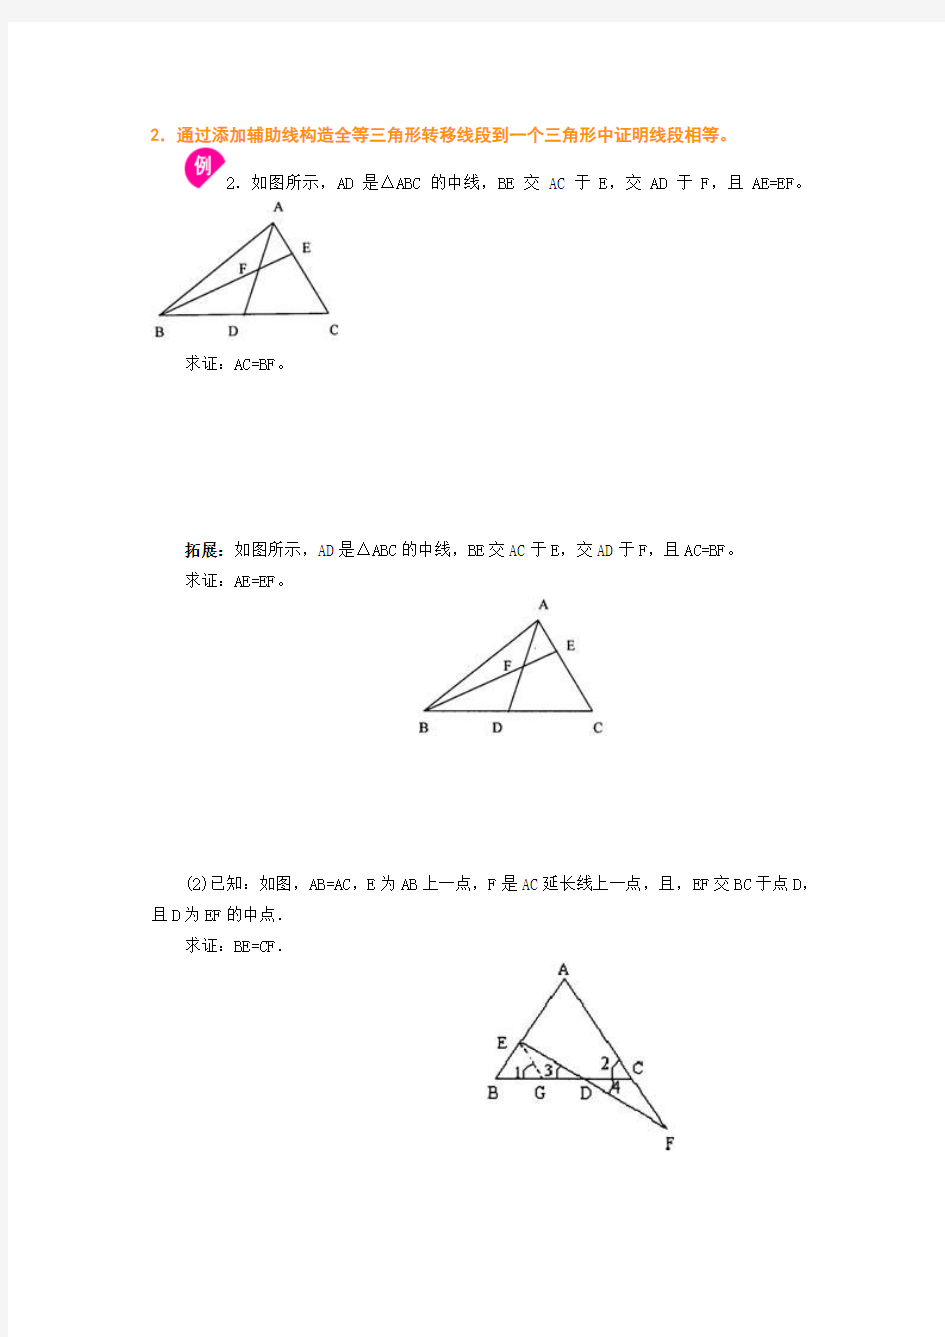 添加辅助线构造全等三角形